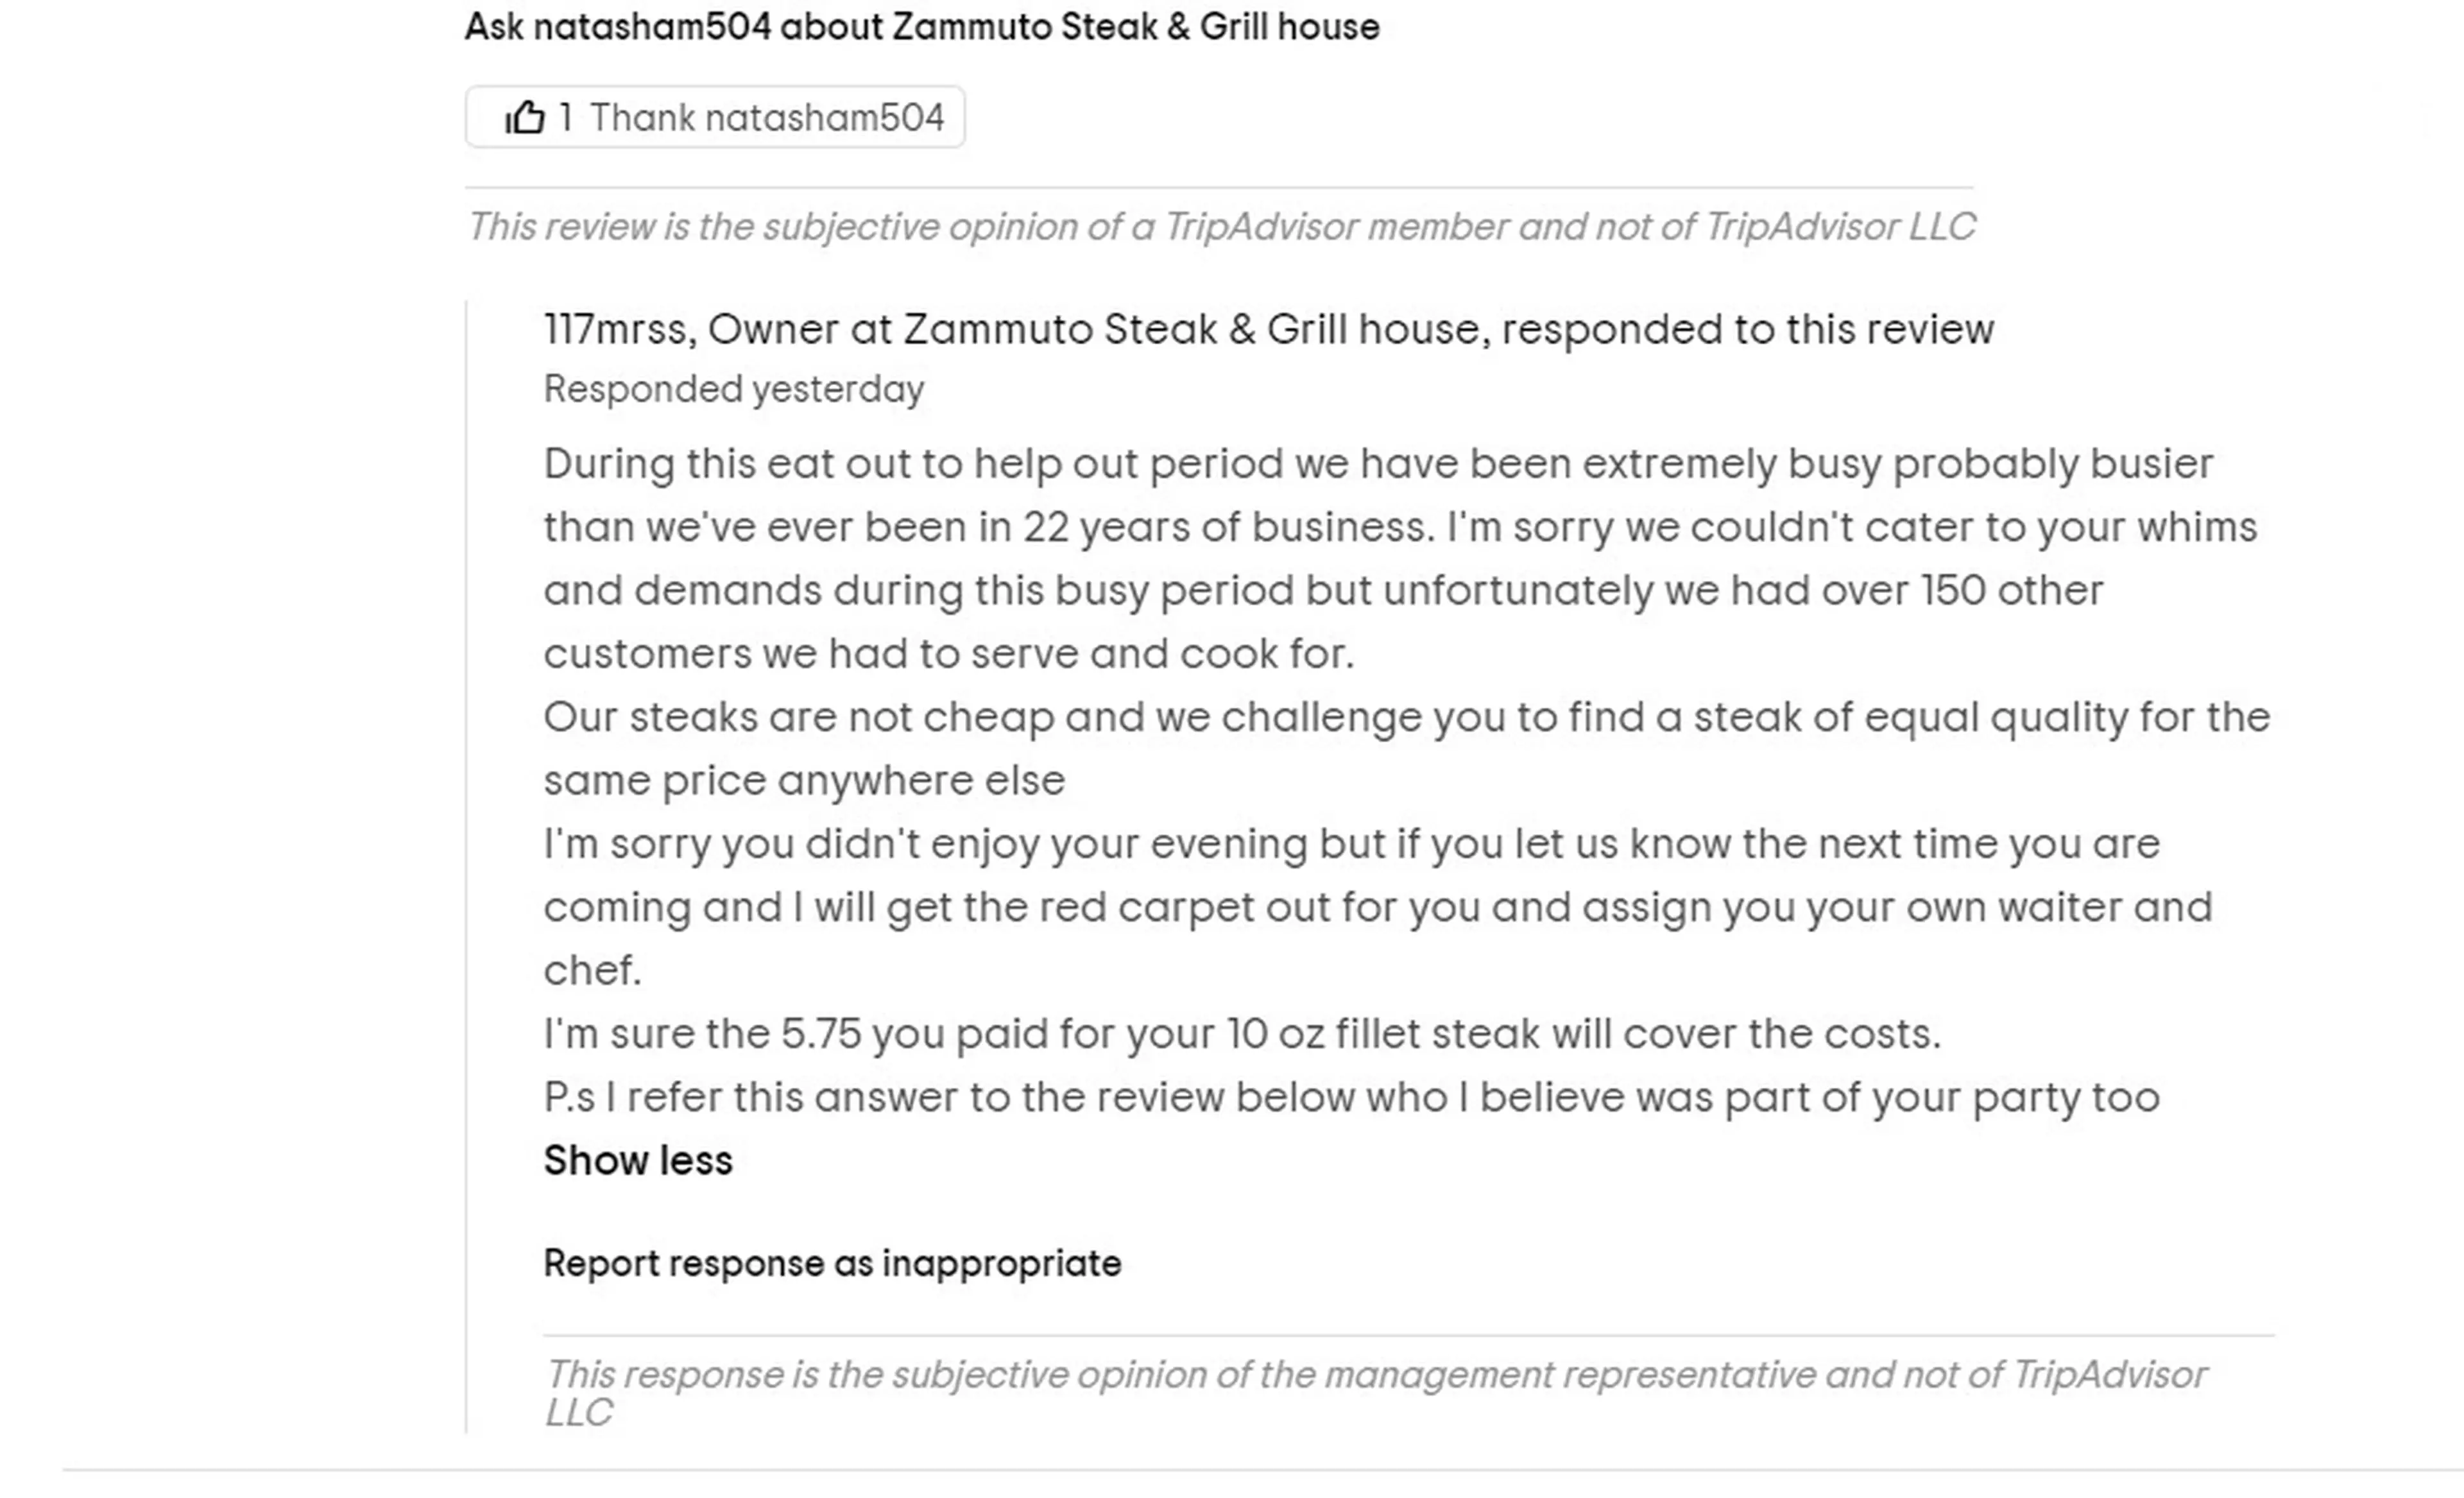 Restaurant boss Giuseppe Zammuto left a rude reply (